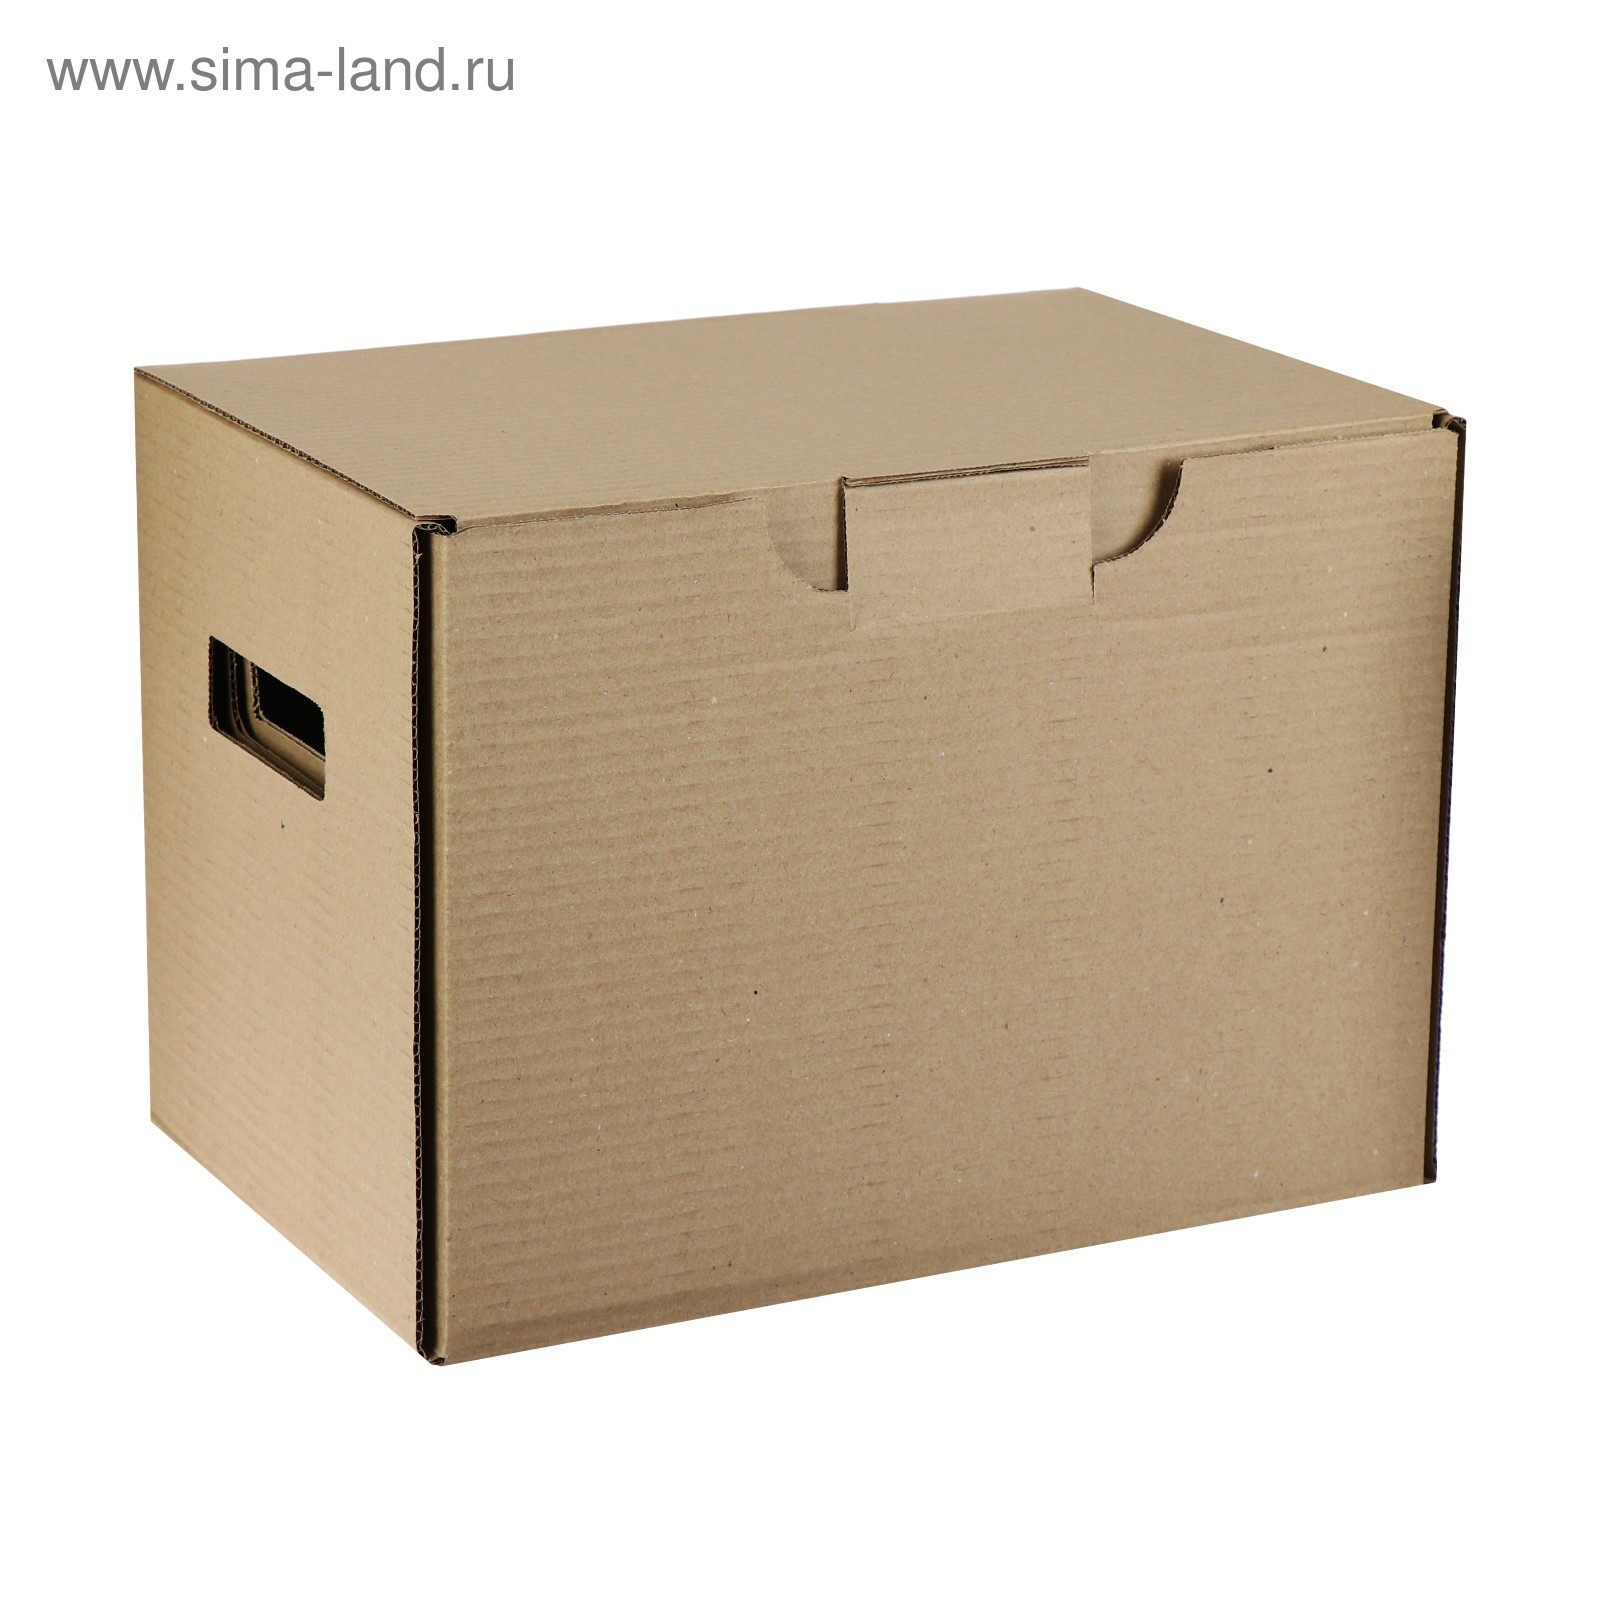 Pappis ПАППИС коробка с крышкой, коричневый25x34x26 см